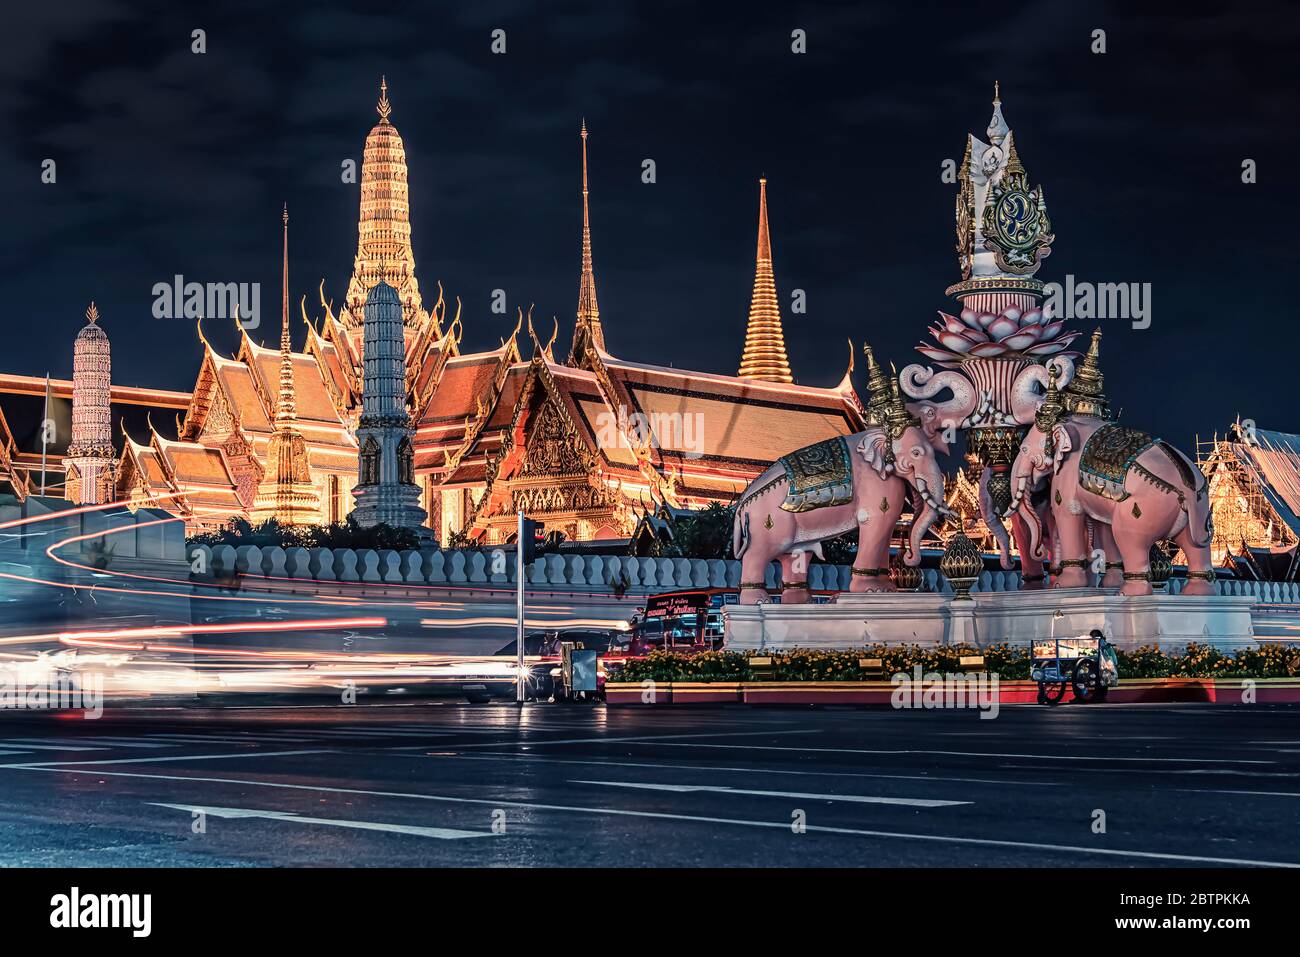 Grand Palace in Bangkok at night Stock Photo